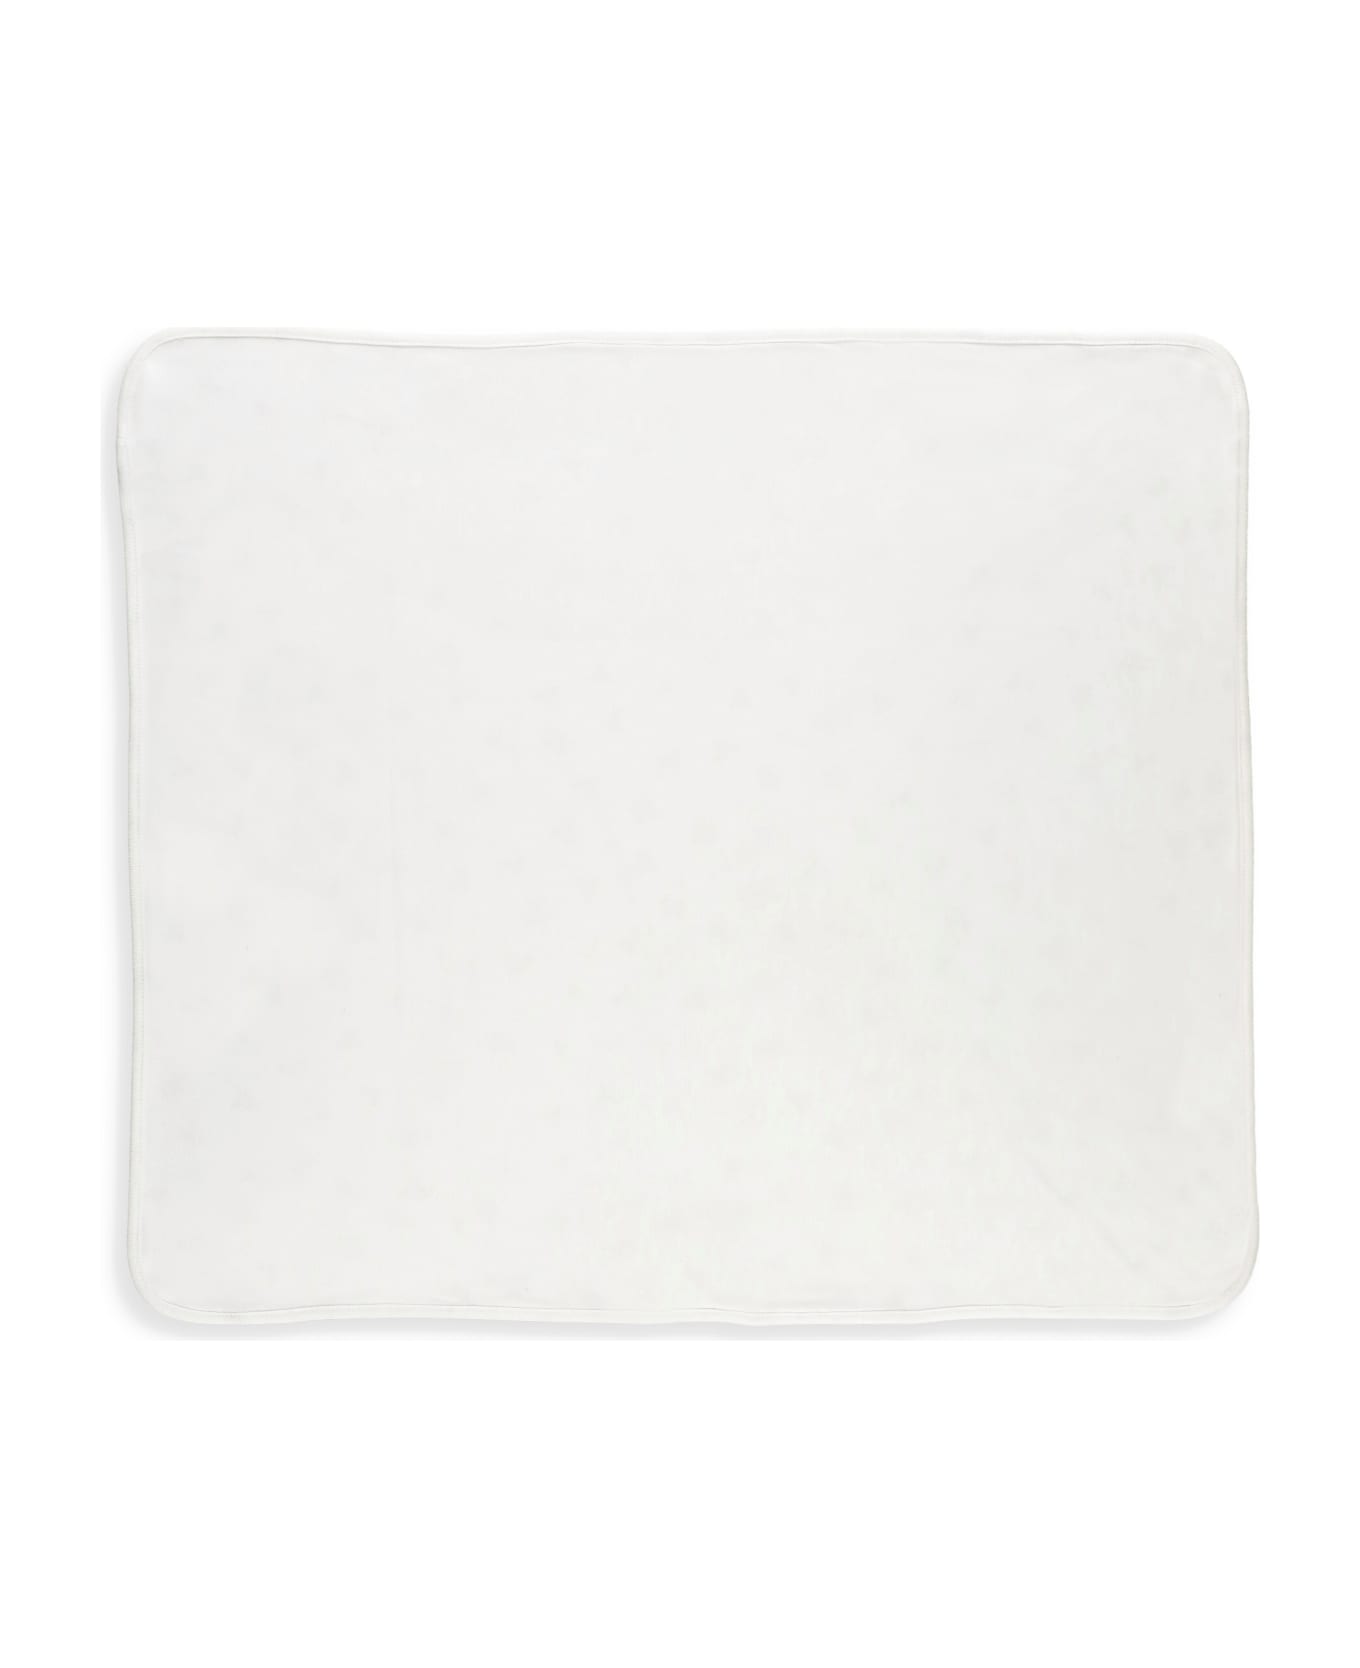 Ralph Lauren Cotton Blanket - White